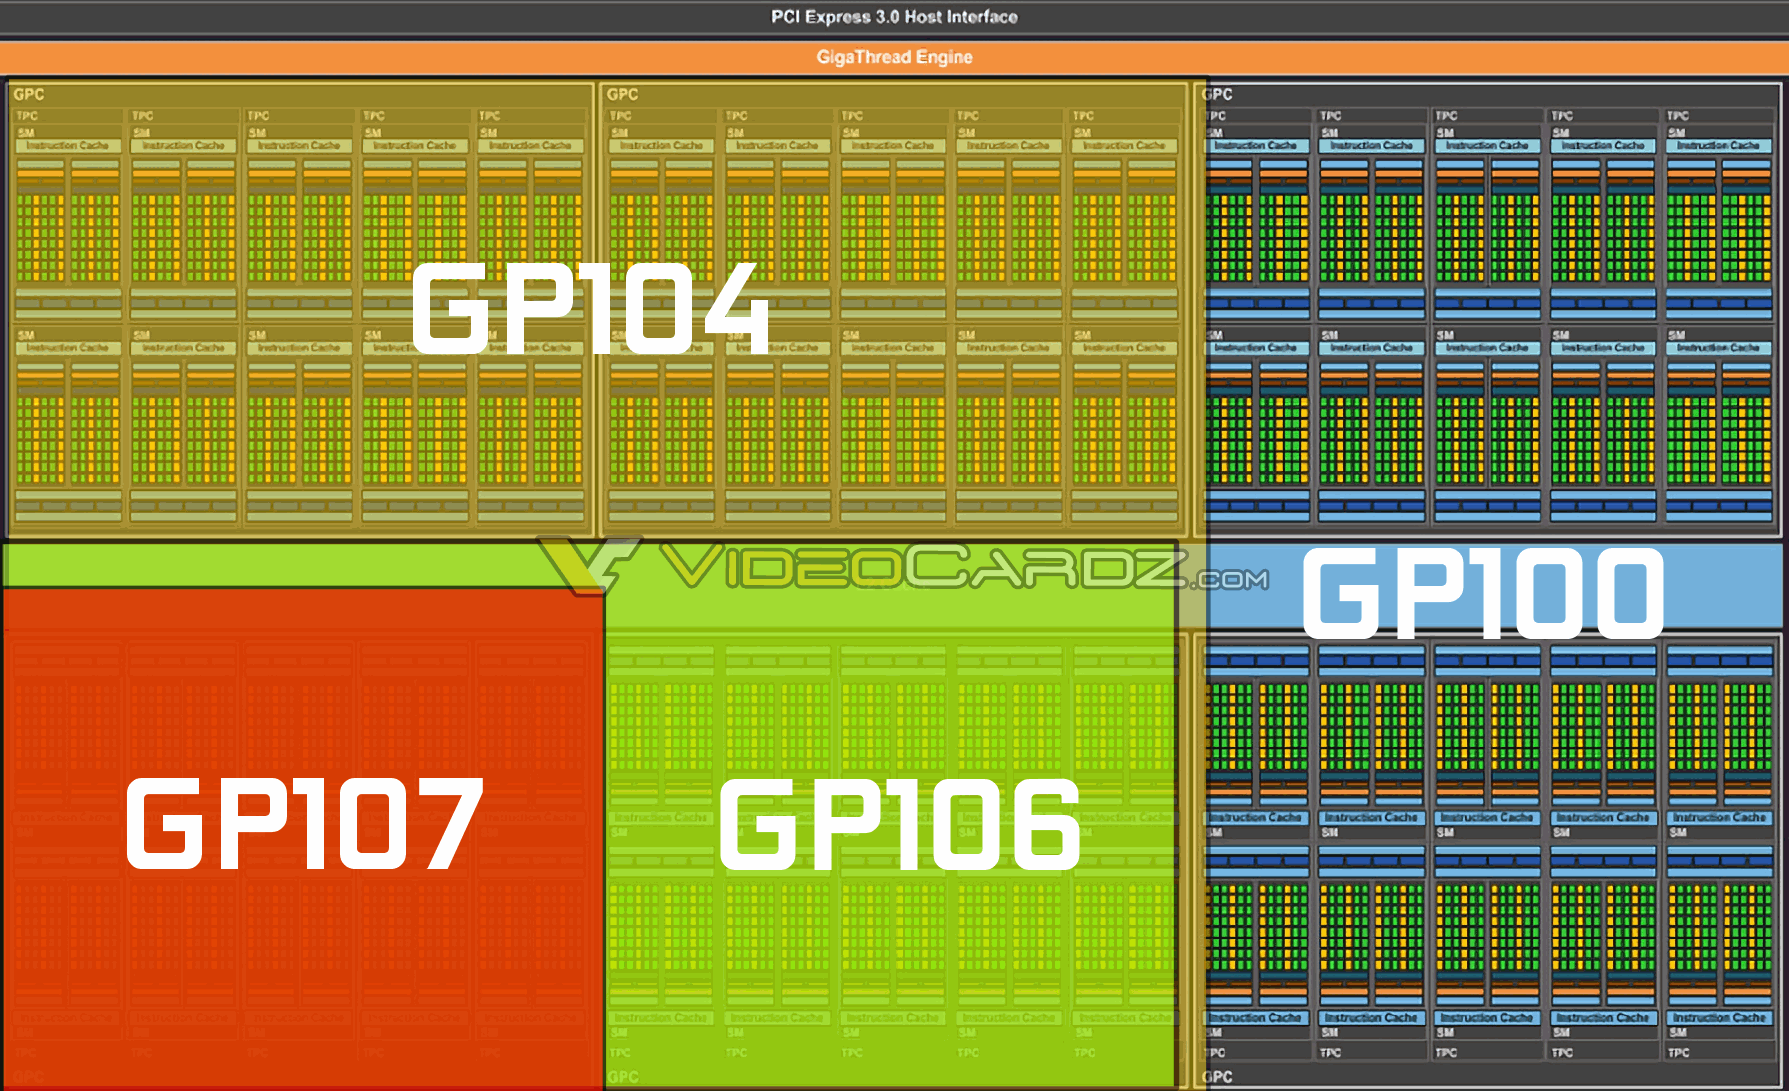 NVIDIA Pascal GP100 Family GPU Block Diagram